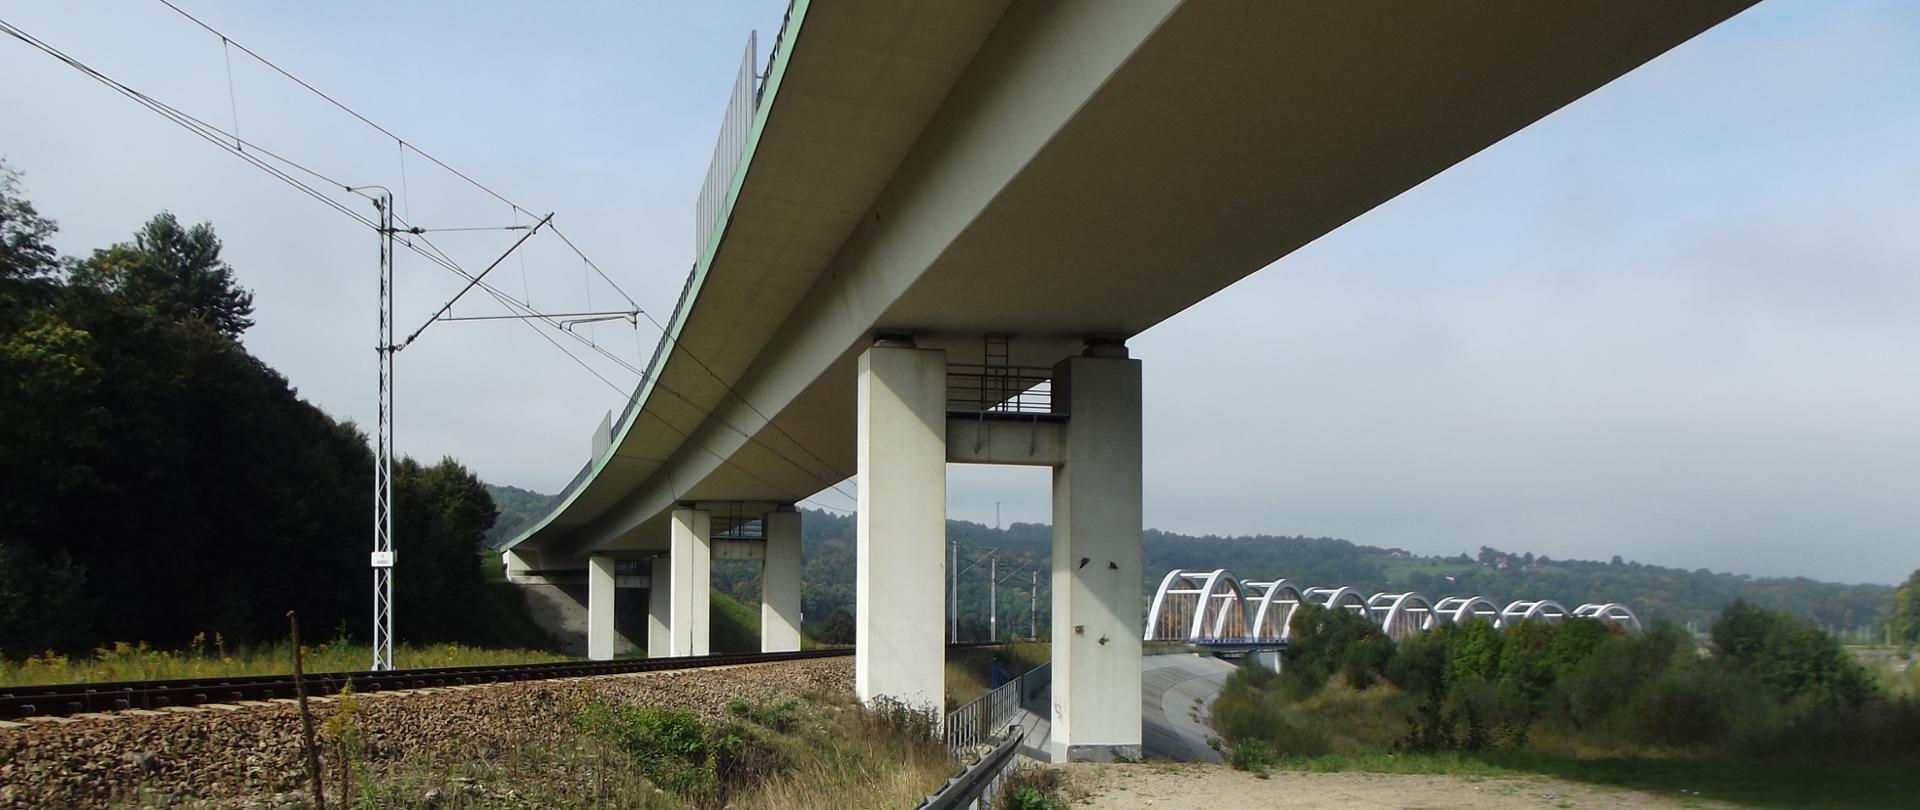 wiadukt na torami kolejowymi, po prawej widoczny most łukowy